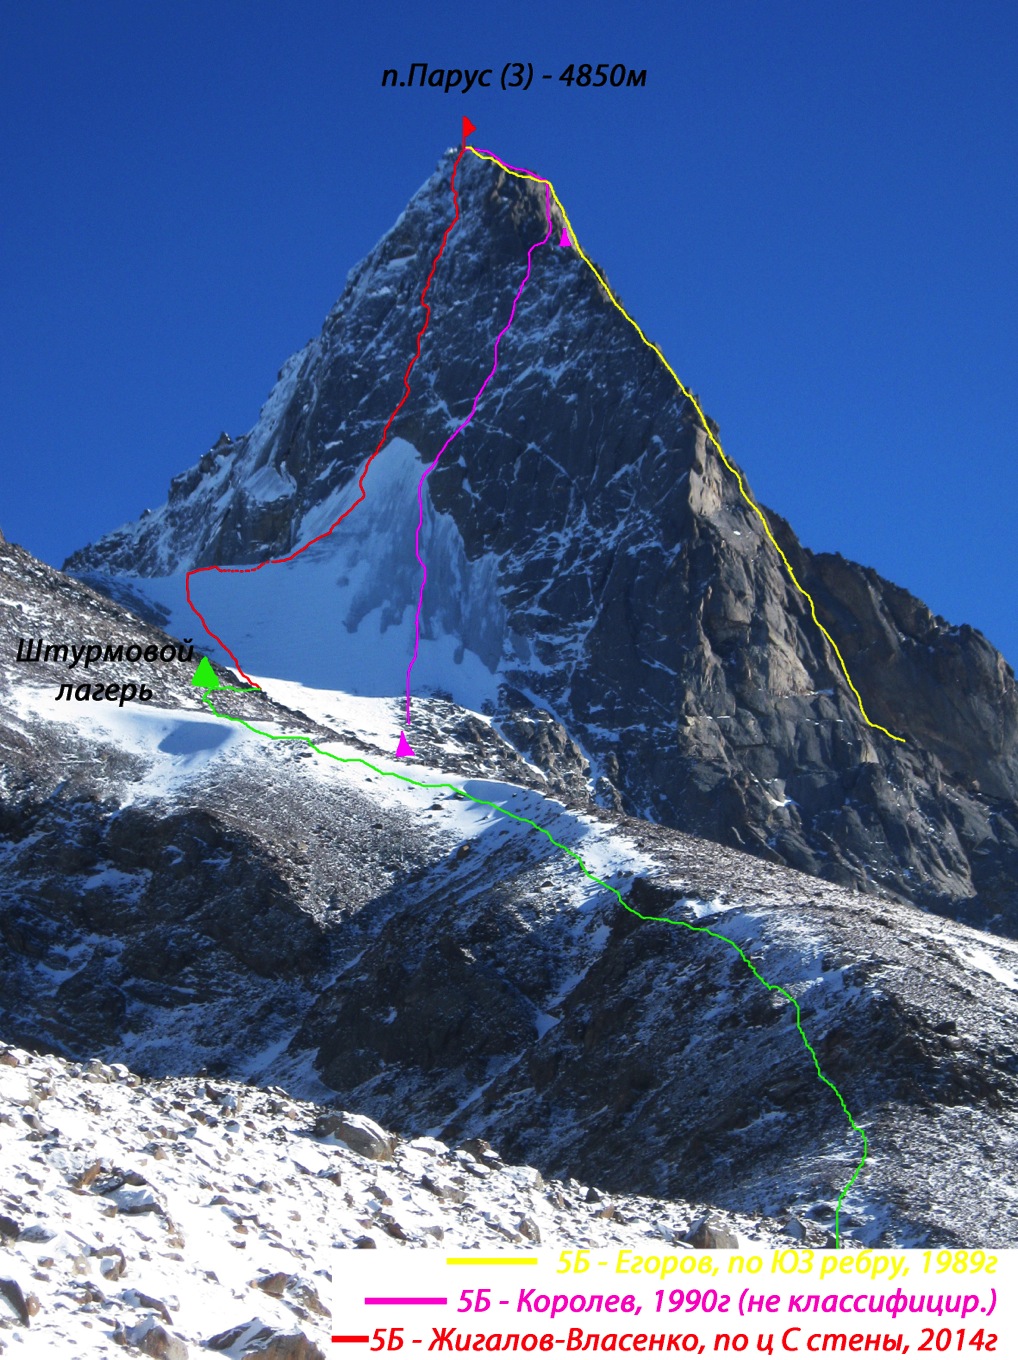 пик Парус Западный (4850 м), первопрохождение по северной стене